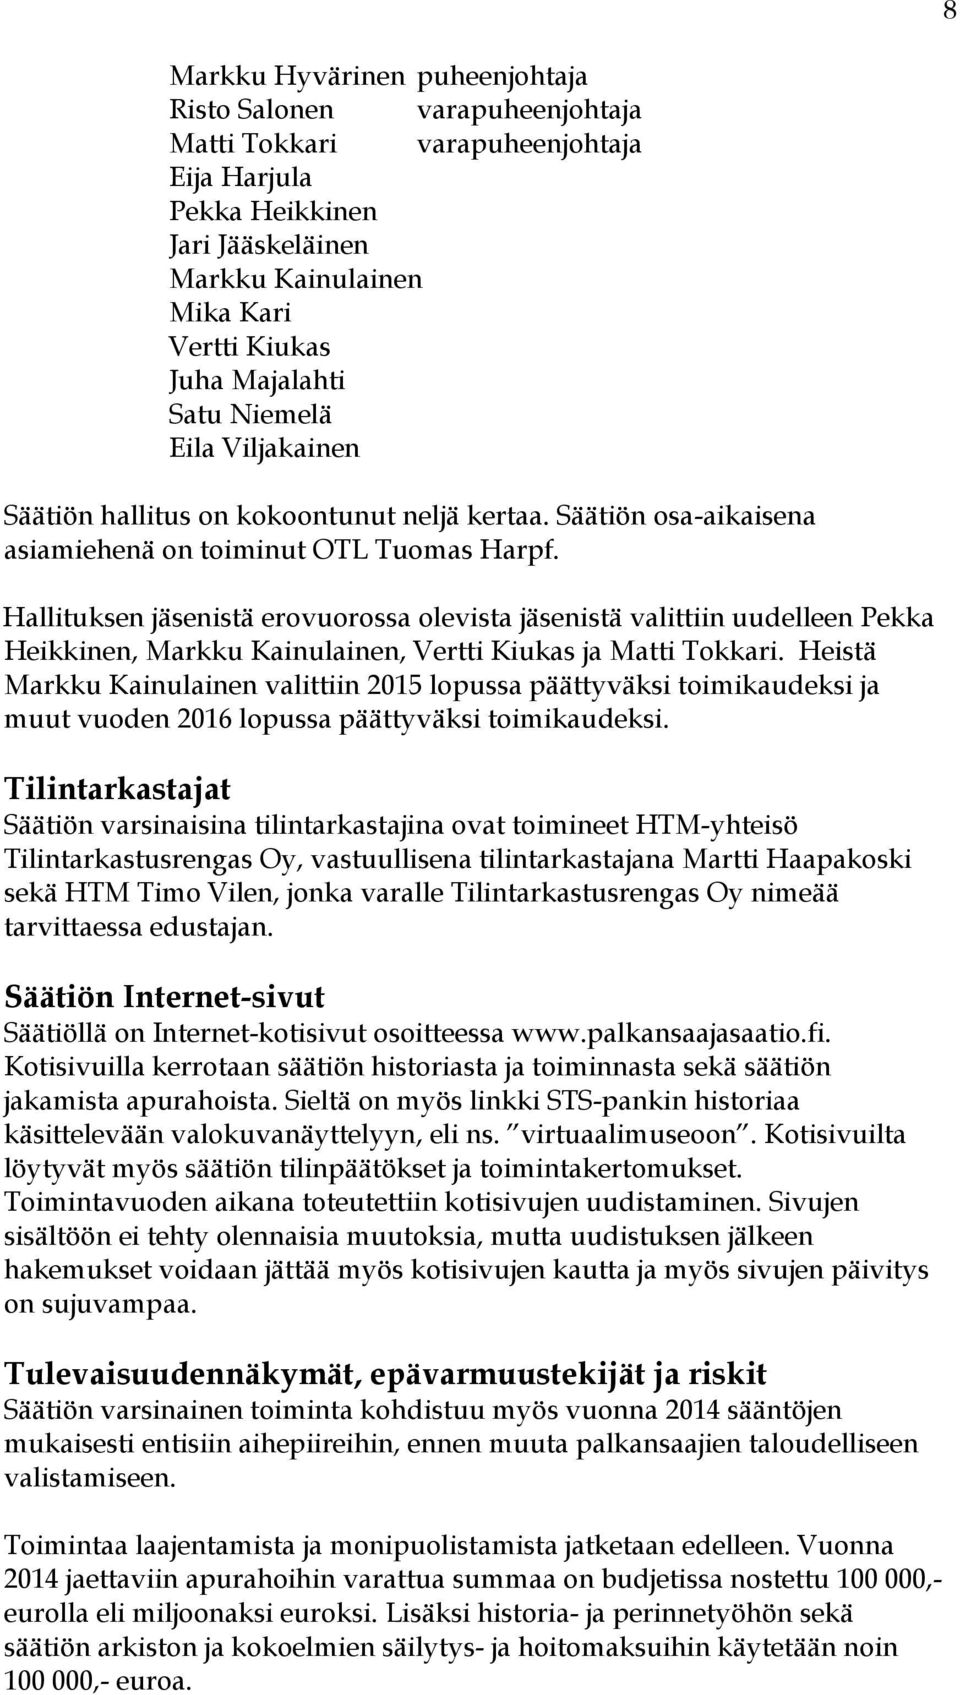 Hallituksen jäsenistä erovuorossa olevista jäsenistä valittiin uudelleen Pekka Heikkinen, Markku Kainulainen, Vertti Kiukas ja Matti Tokkari.